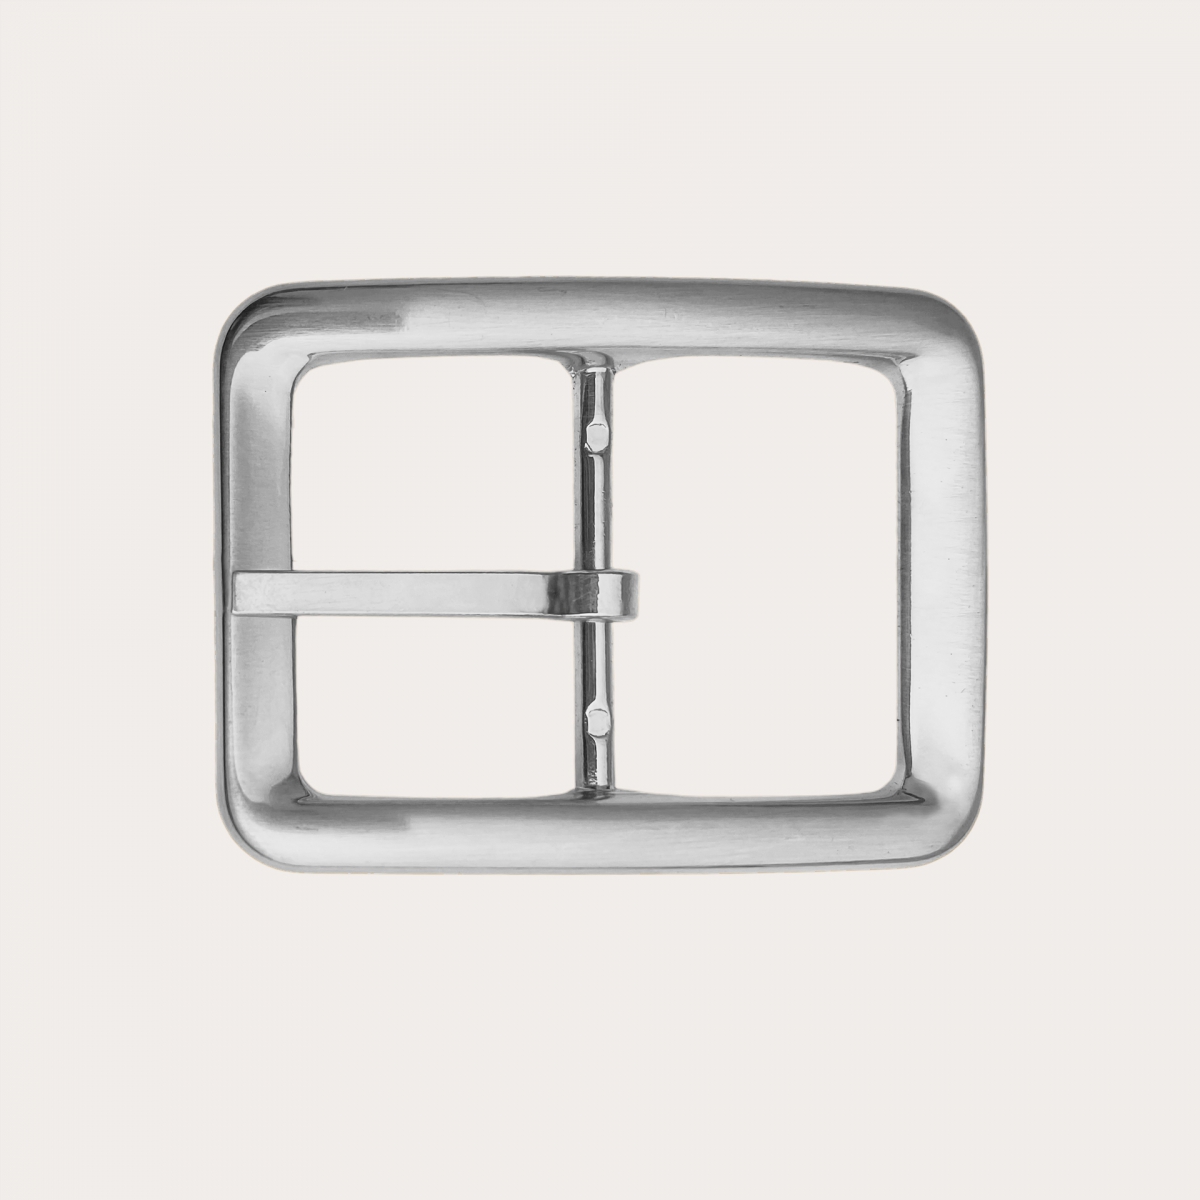 BRUCLE Fibbia doppia reversibile nickel free 35mm, color argento satinato